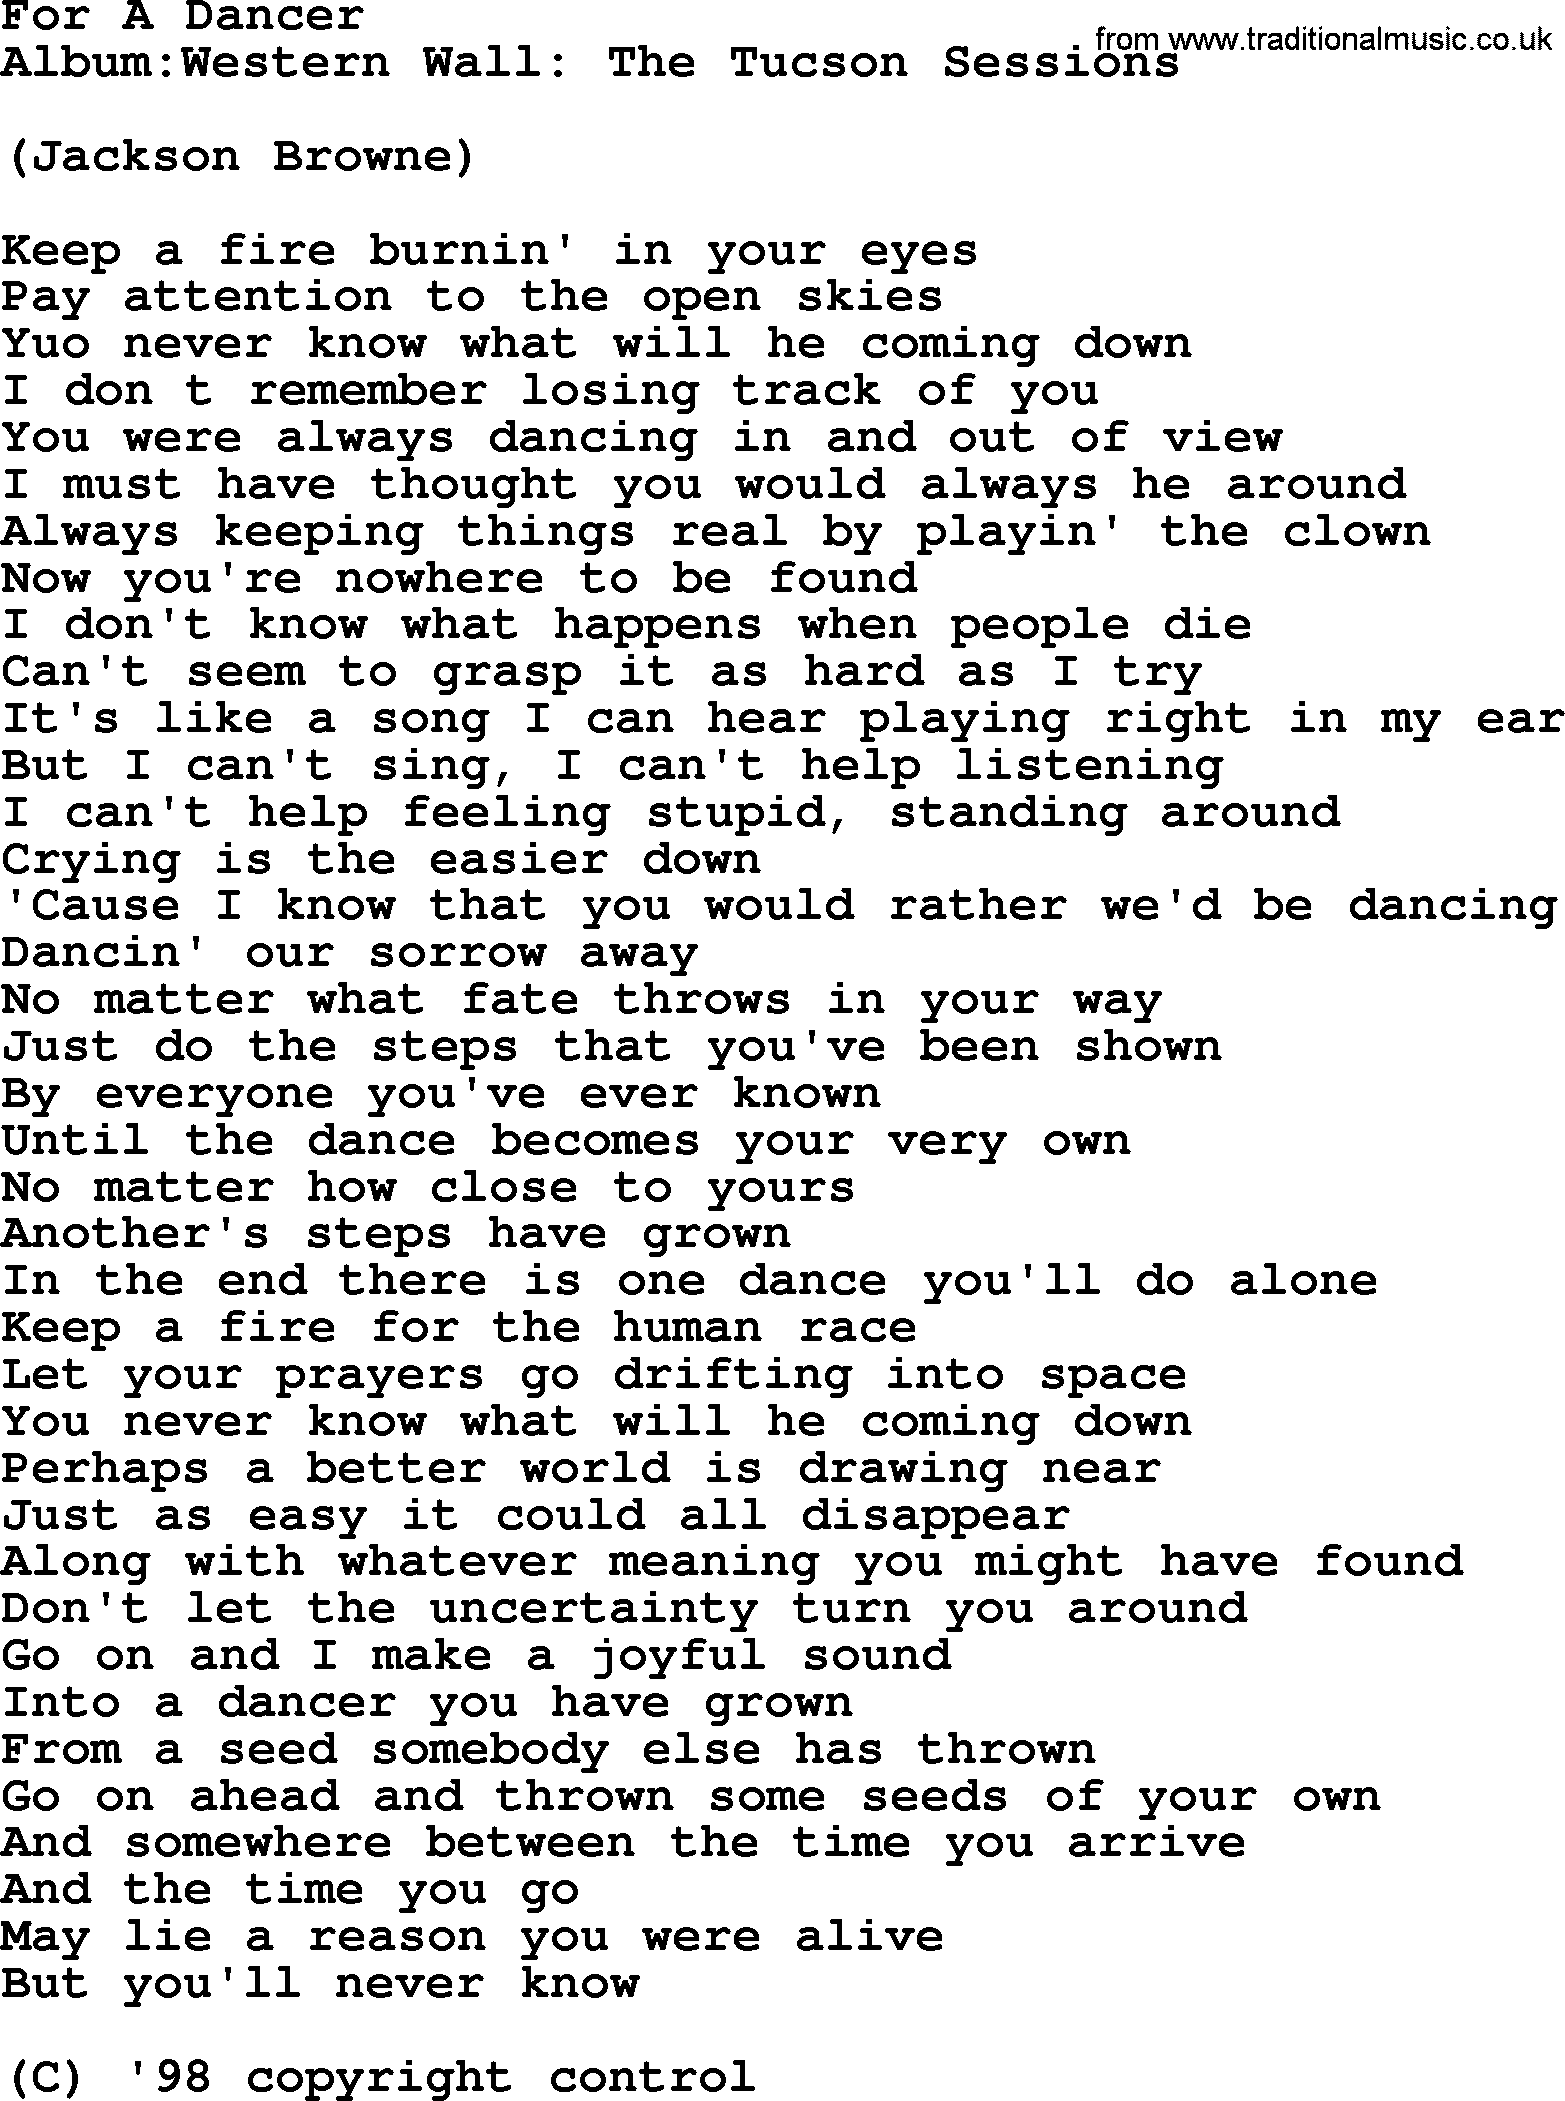 Emmylou Harris song: For A Dancer lyrics